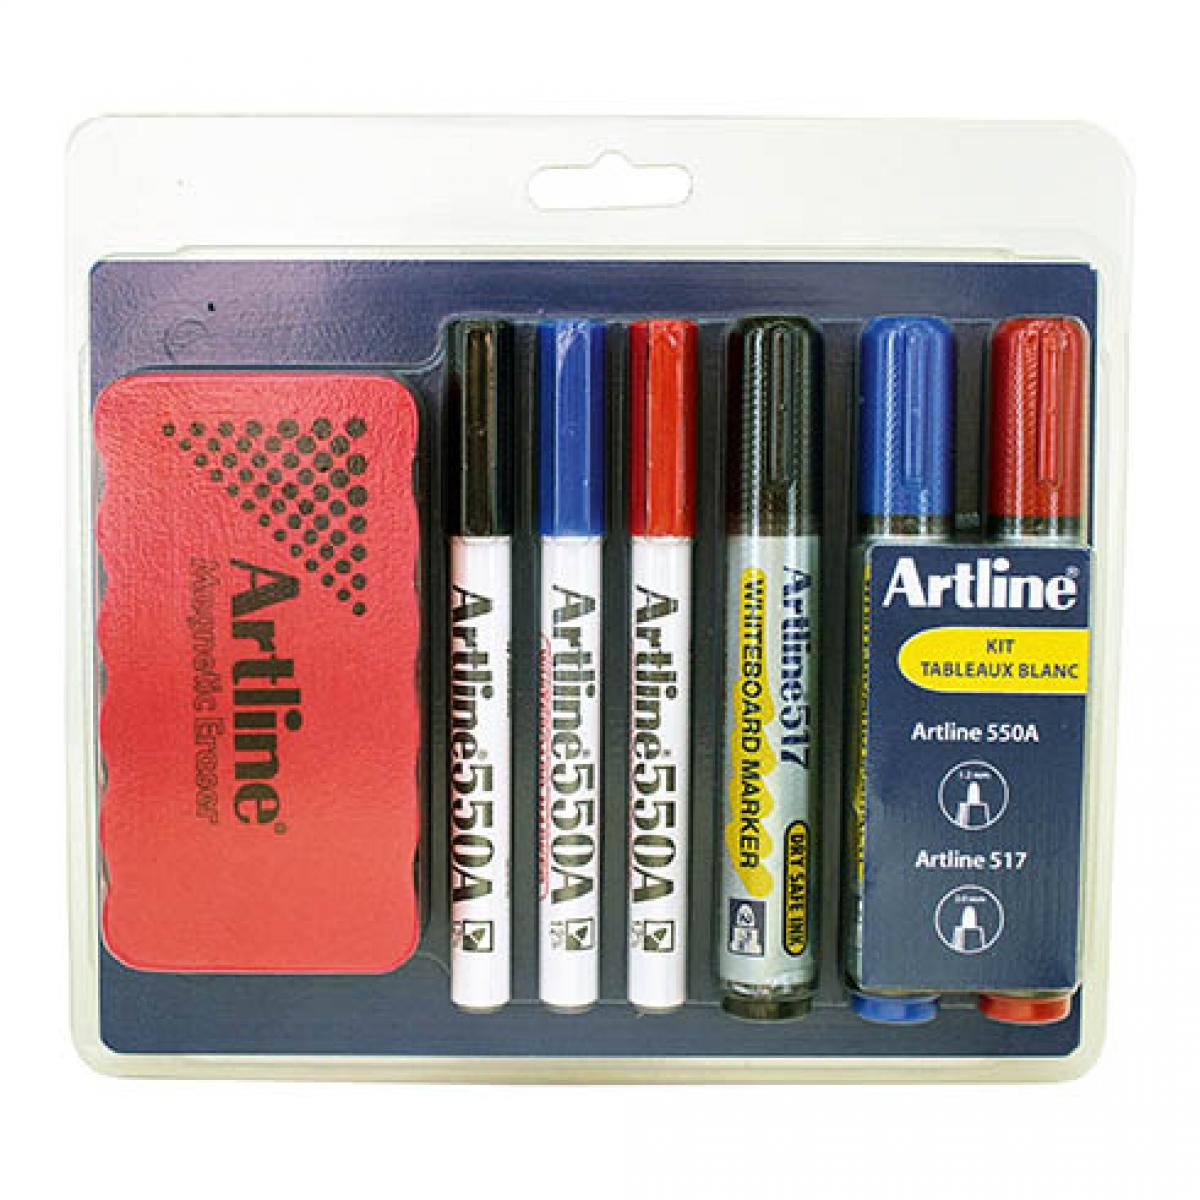 Art Line - Kit d'accessoires Artline pour tableau blanc - Accessoires Bureau